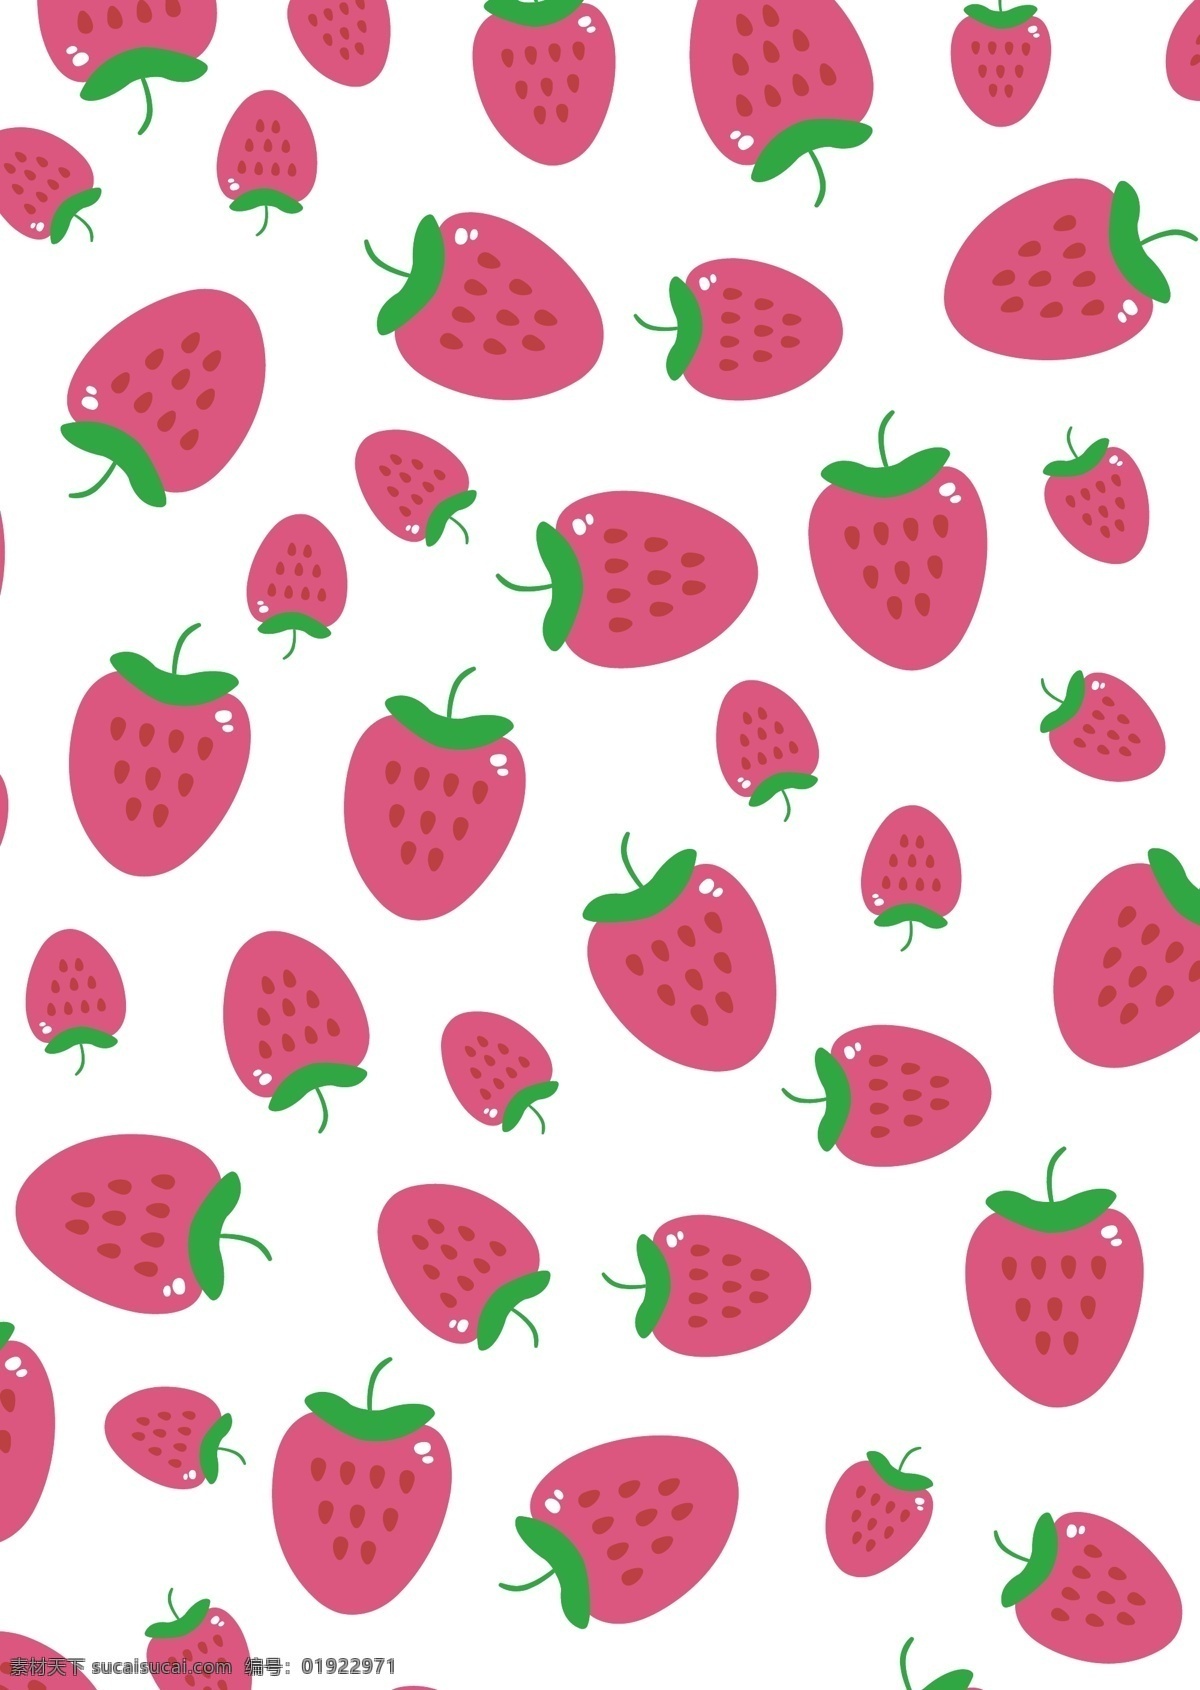 女童 印花 草莓 strawberry 草莓印花 女童印花 草莓底纹 草莓背景 草莓满印 白色